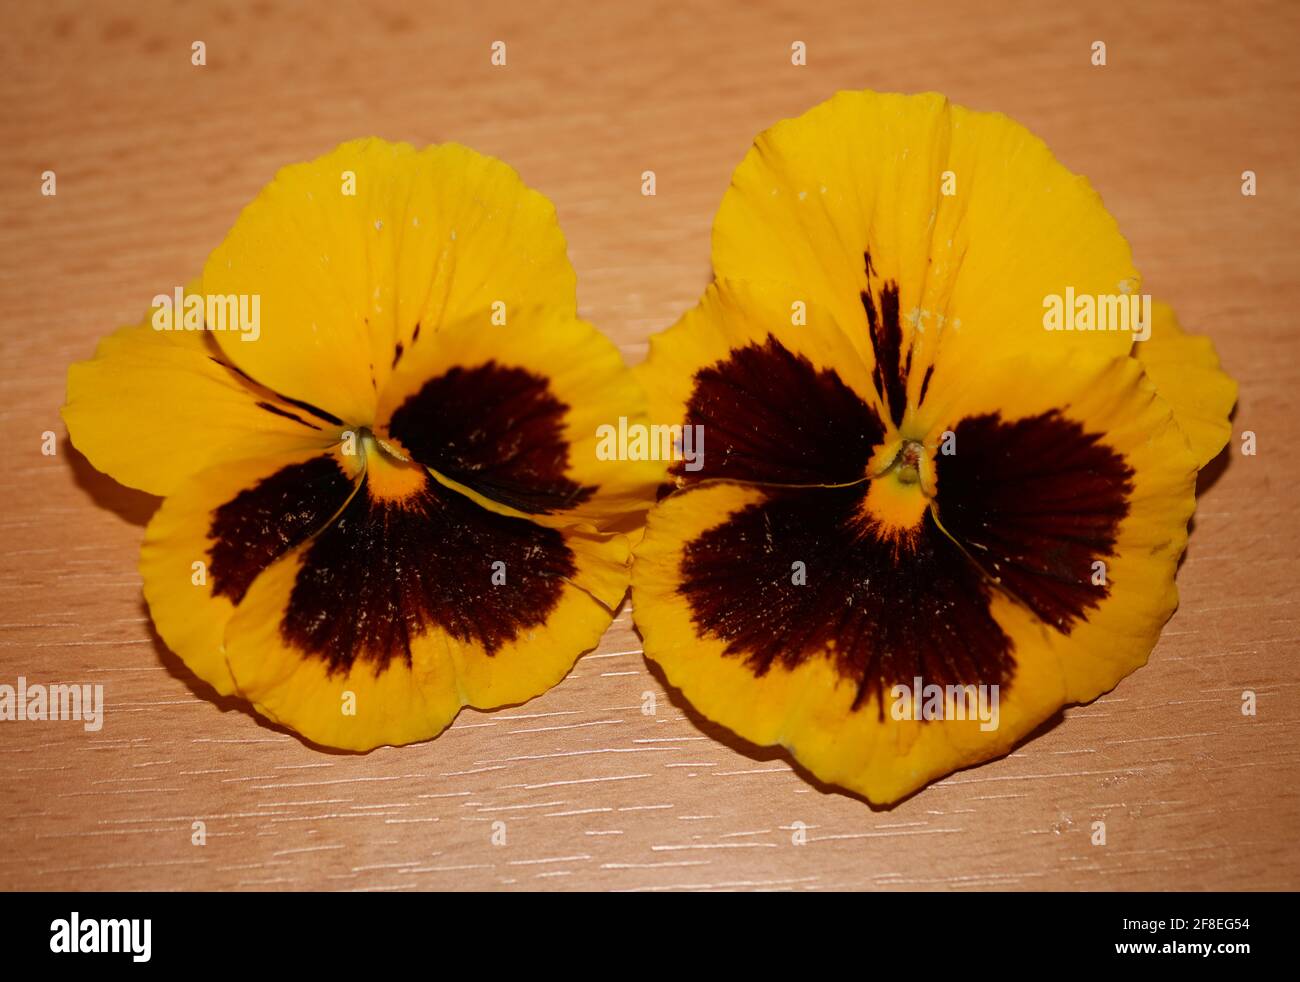 Famille des fleurs de ransy jaune violaceae gros plan trébuchant moderne tirages grand format de haute qualité Banque D'Images